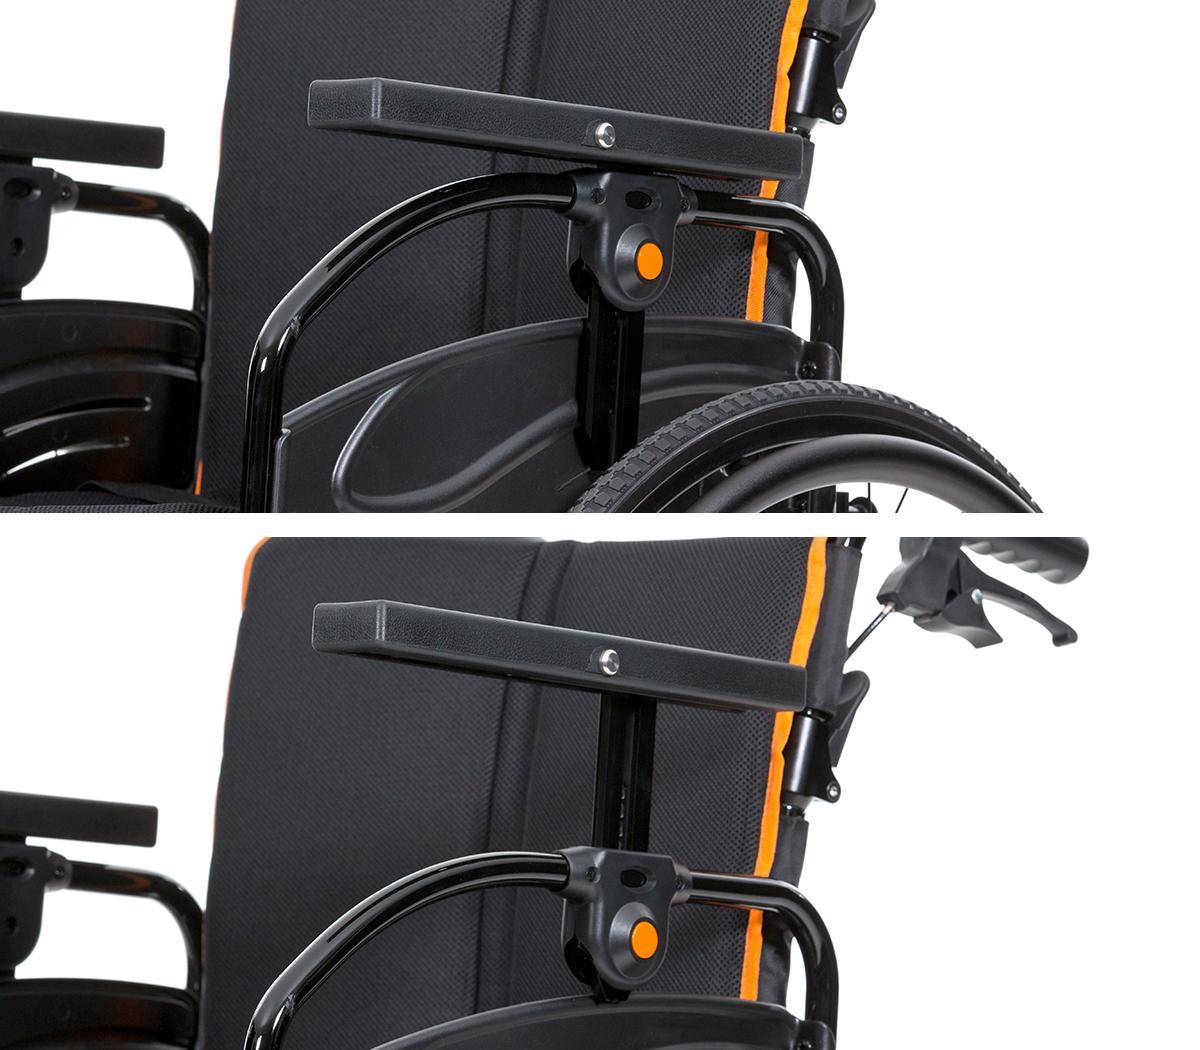 Kleine Rolle, große Hilfe: RollirolleR setzt bei der Verladung von  Rollstühlen neue Maßstäbe - openPR